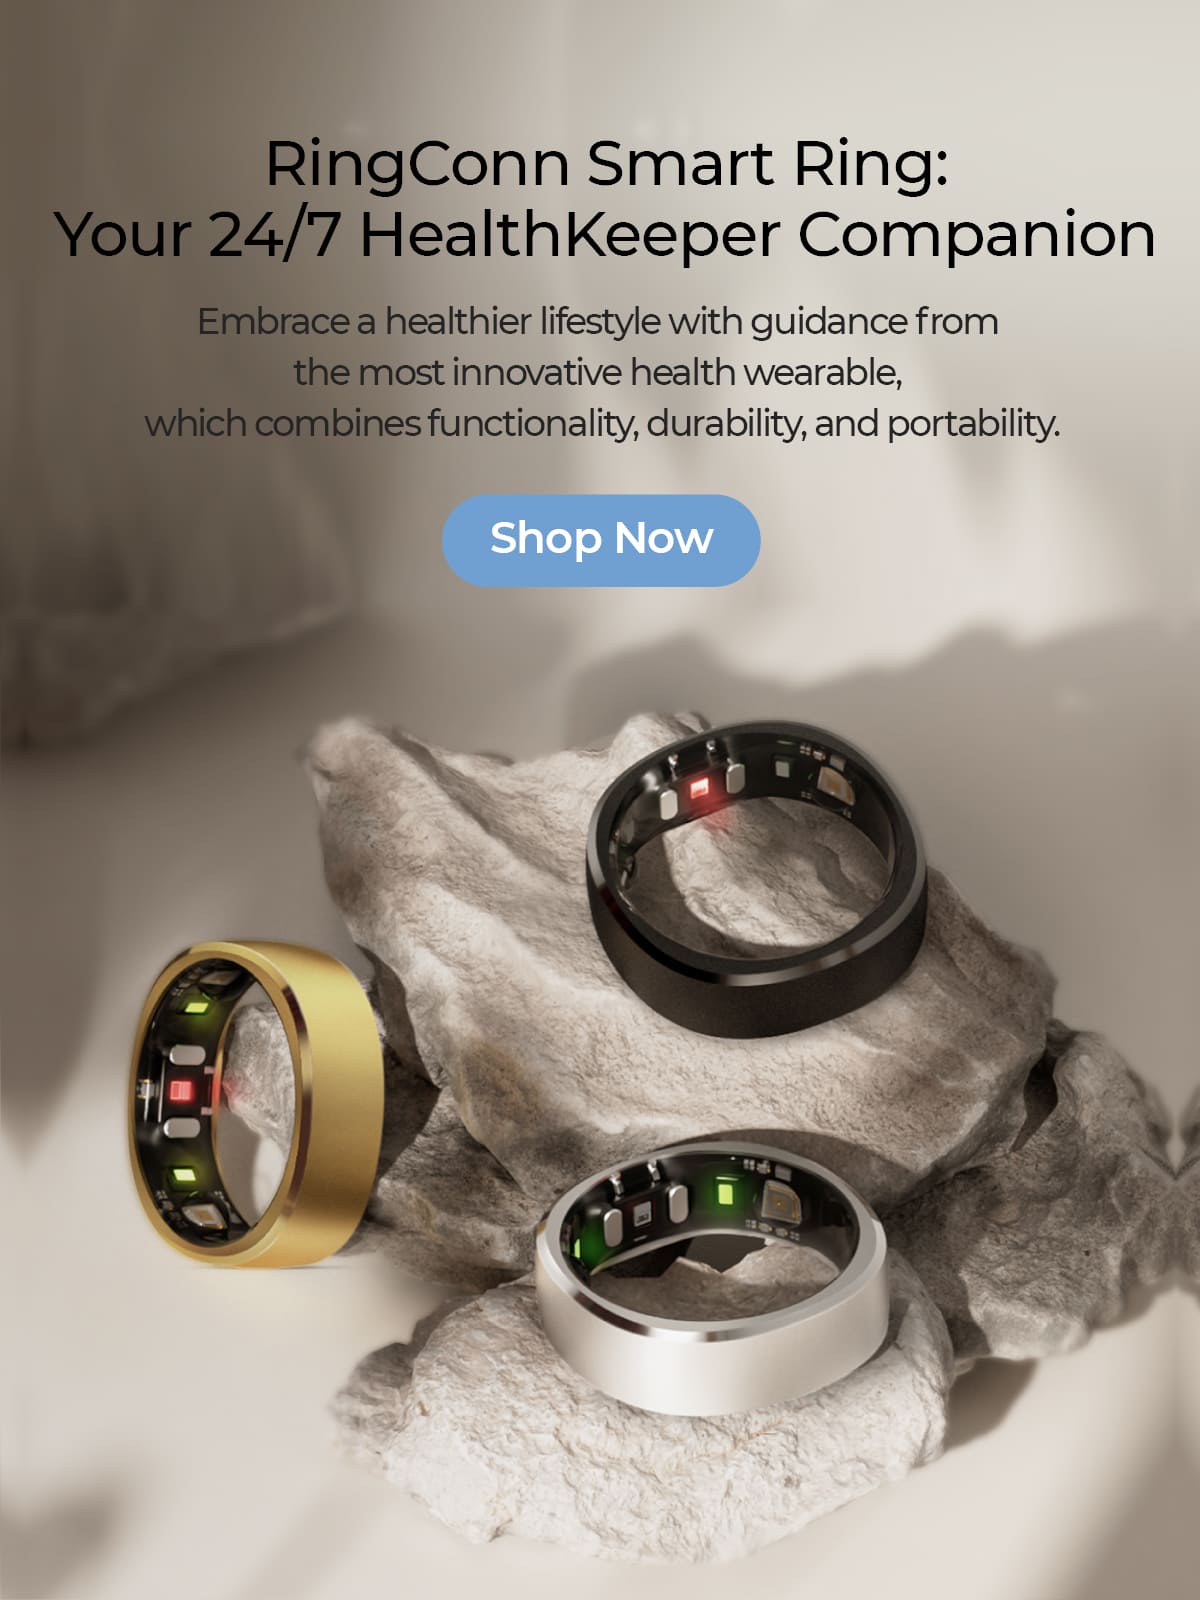 ringconn smart ring for health